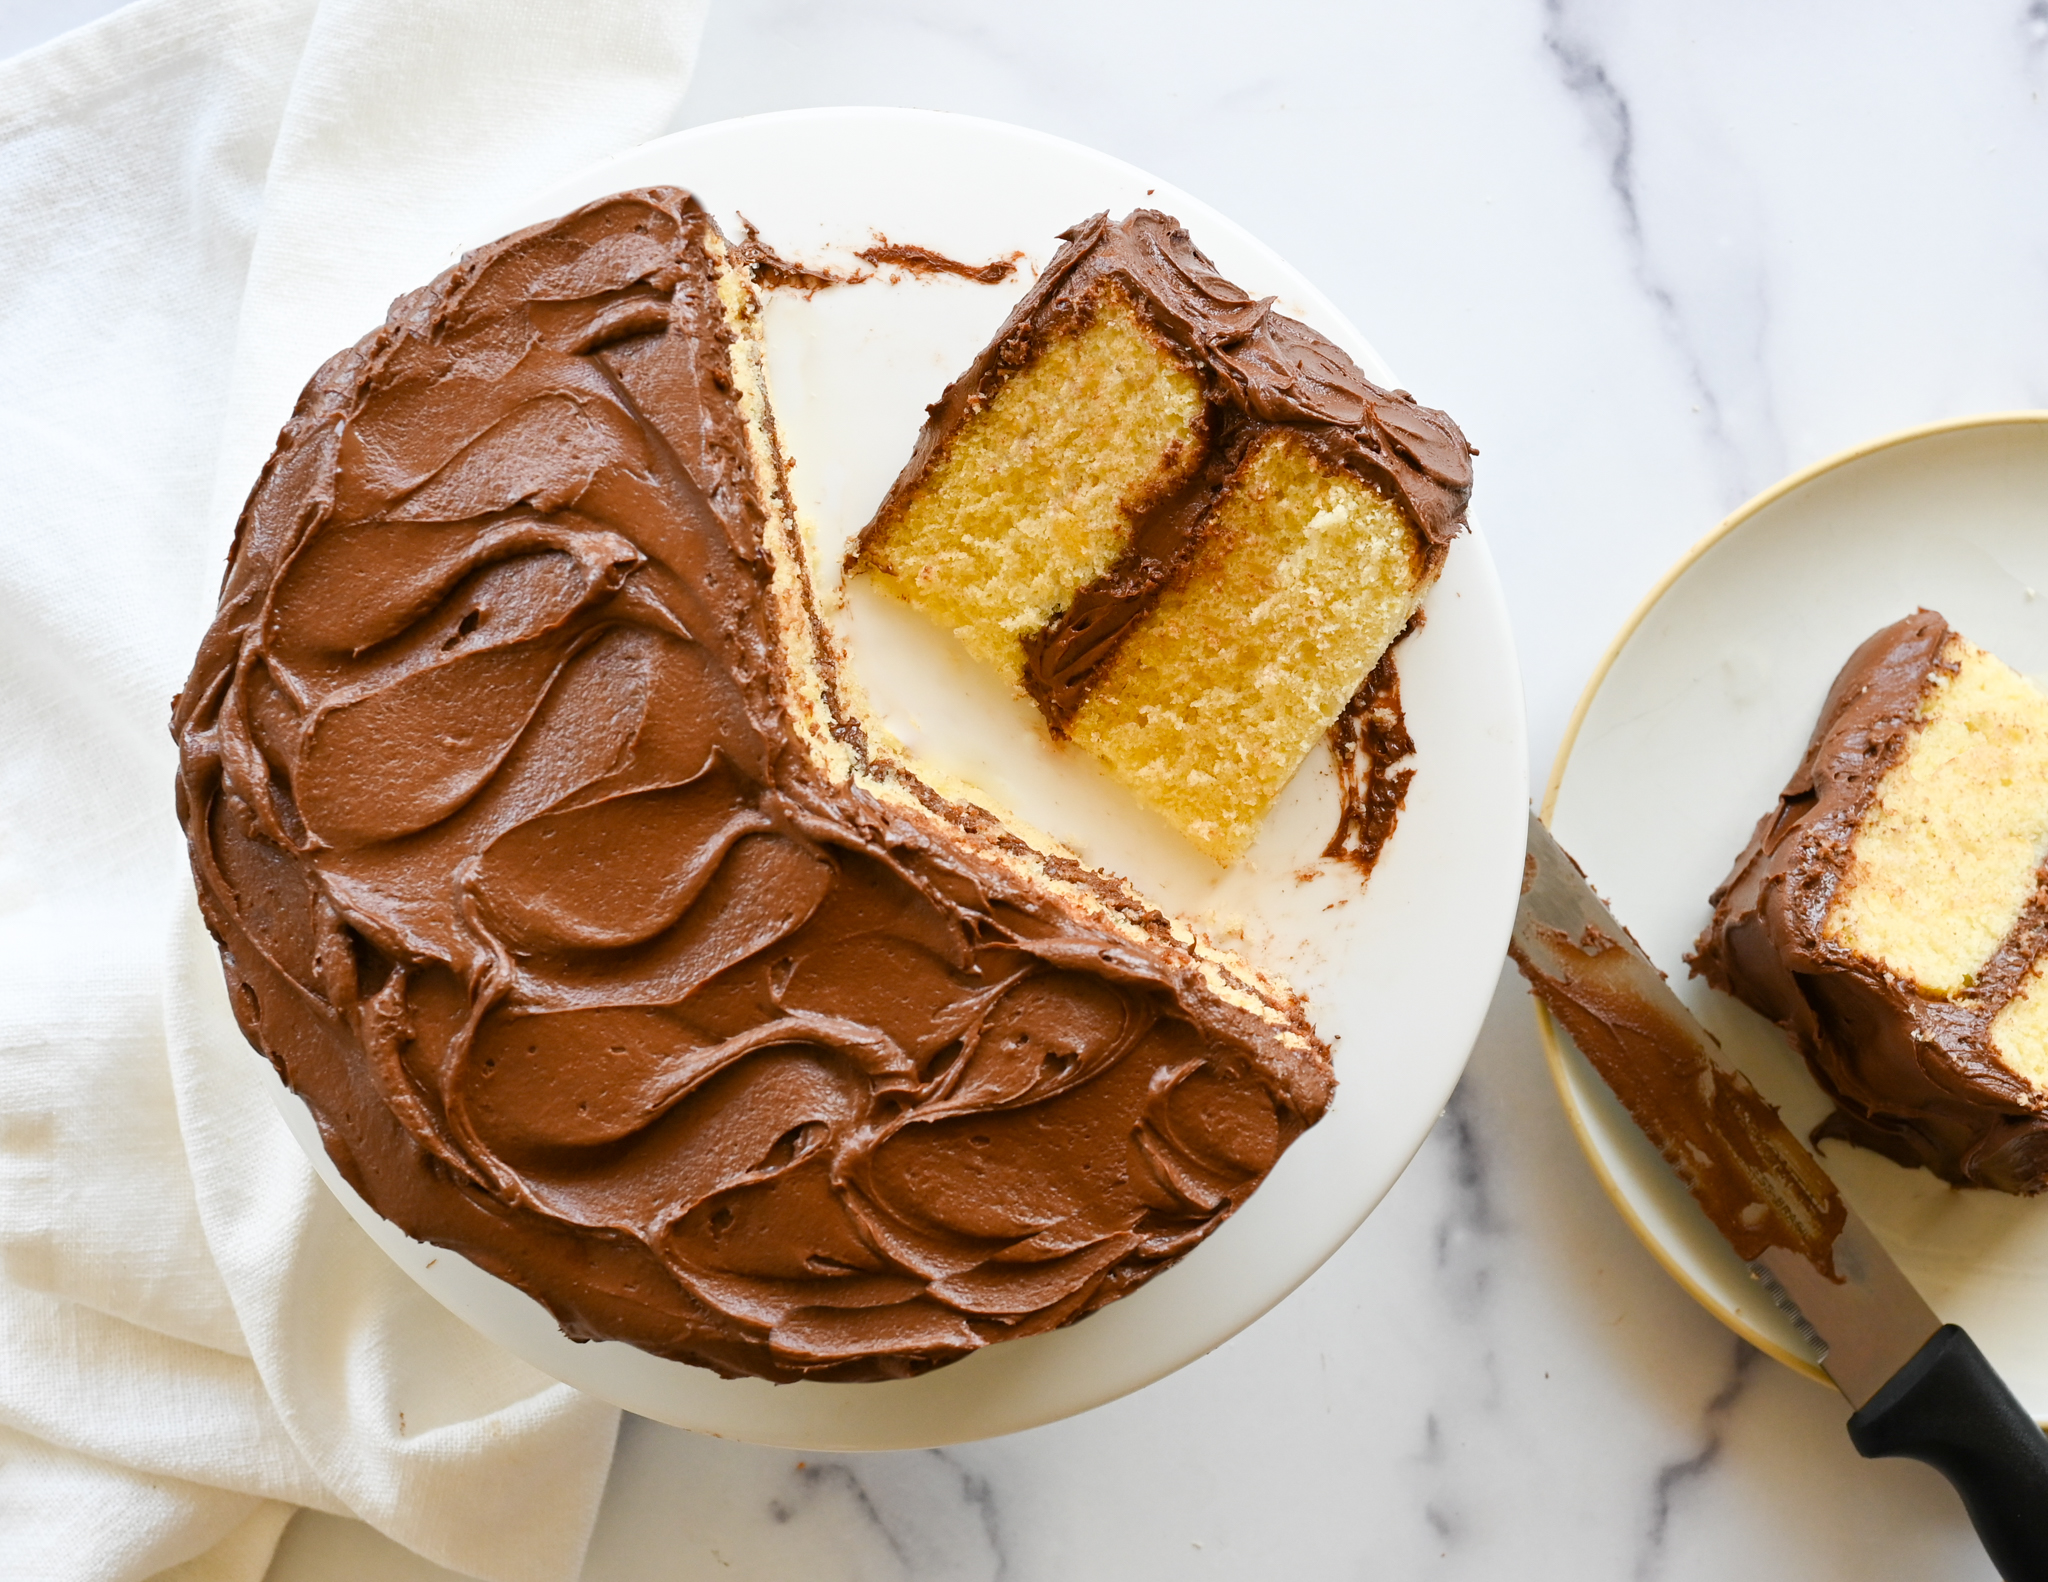 Gâteau jaune avec crème au beurre riche au chocolat – Once Upon a Chef